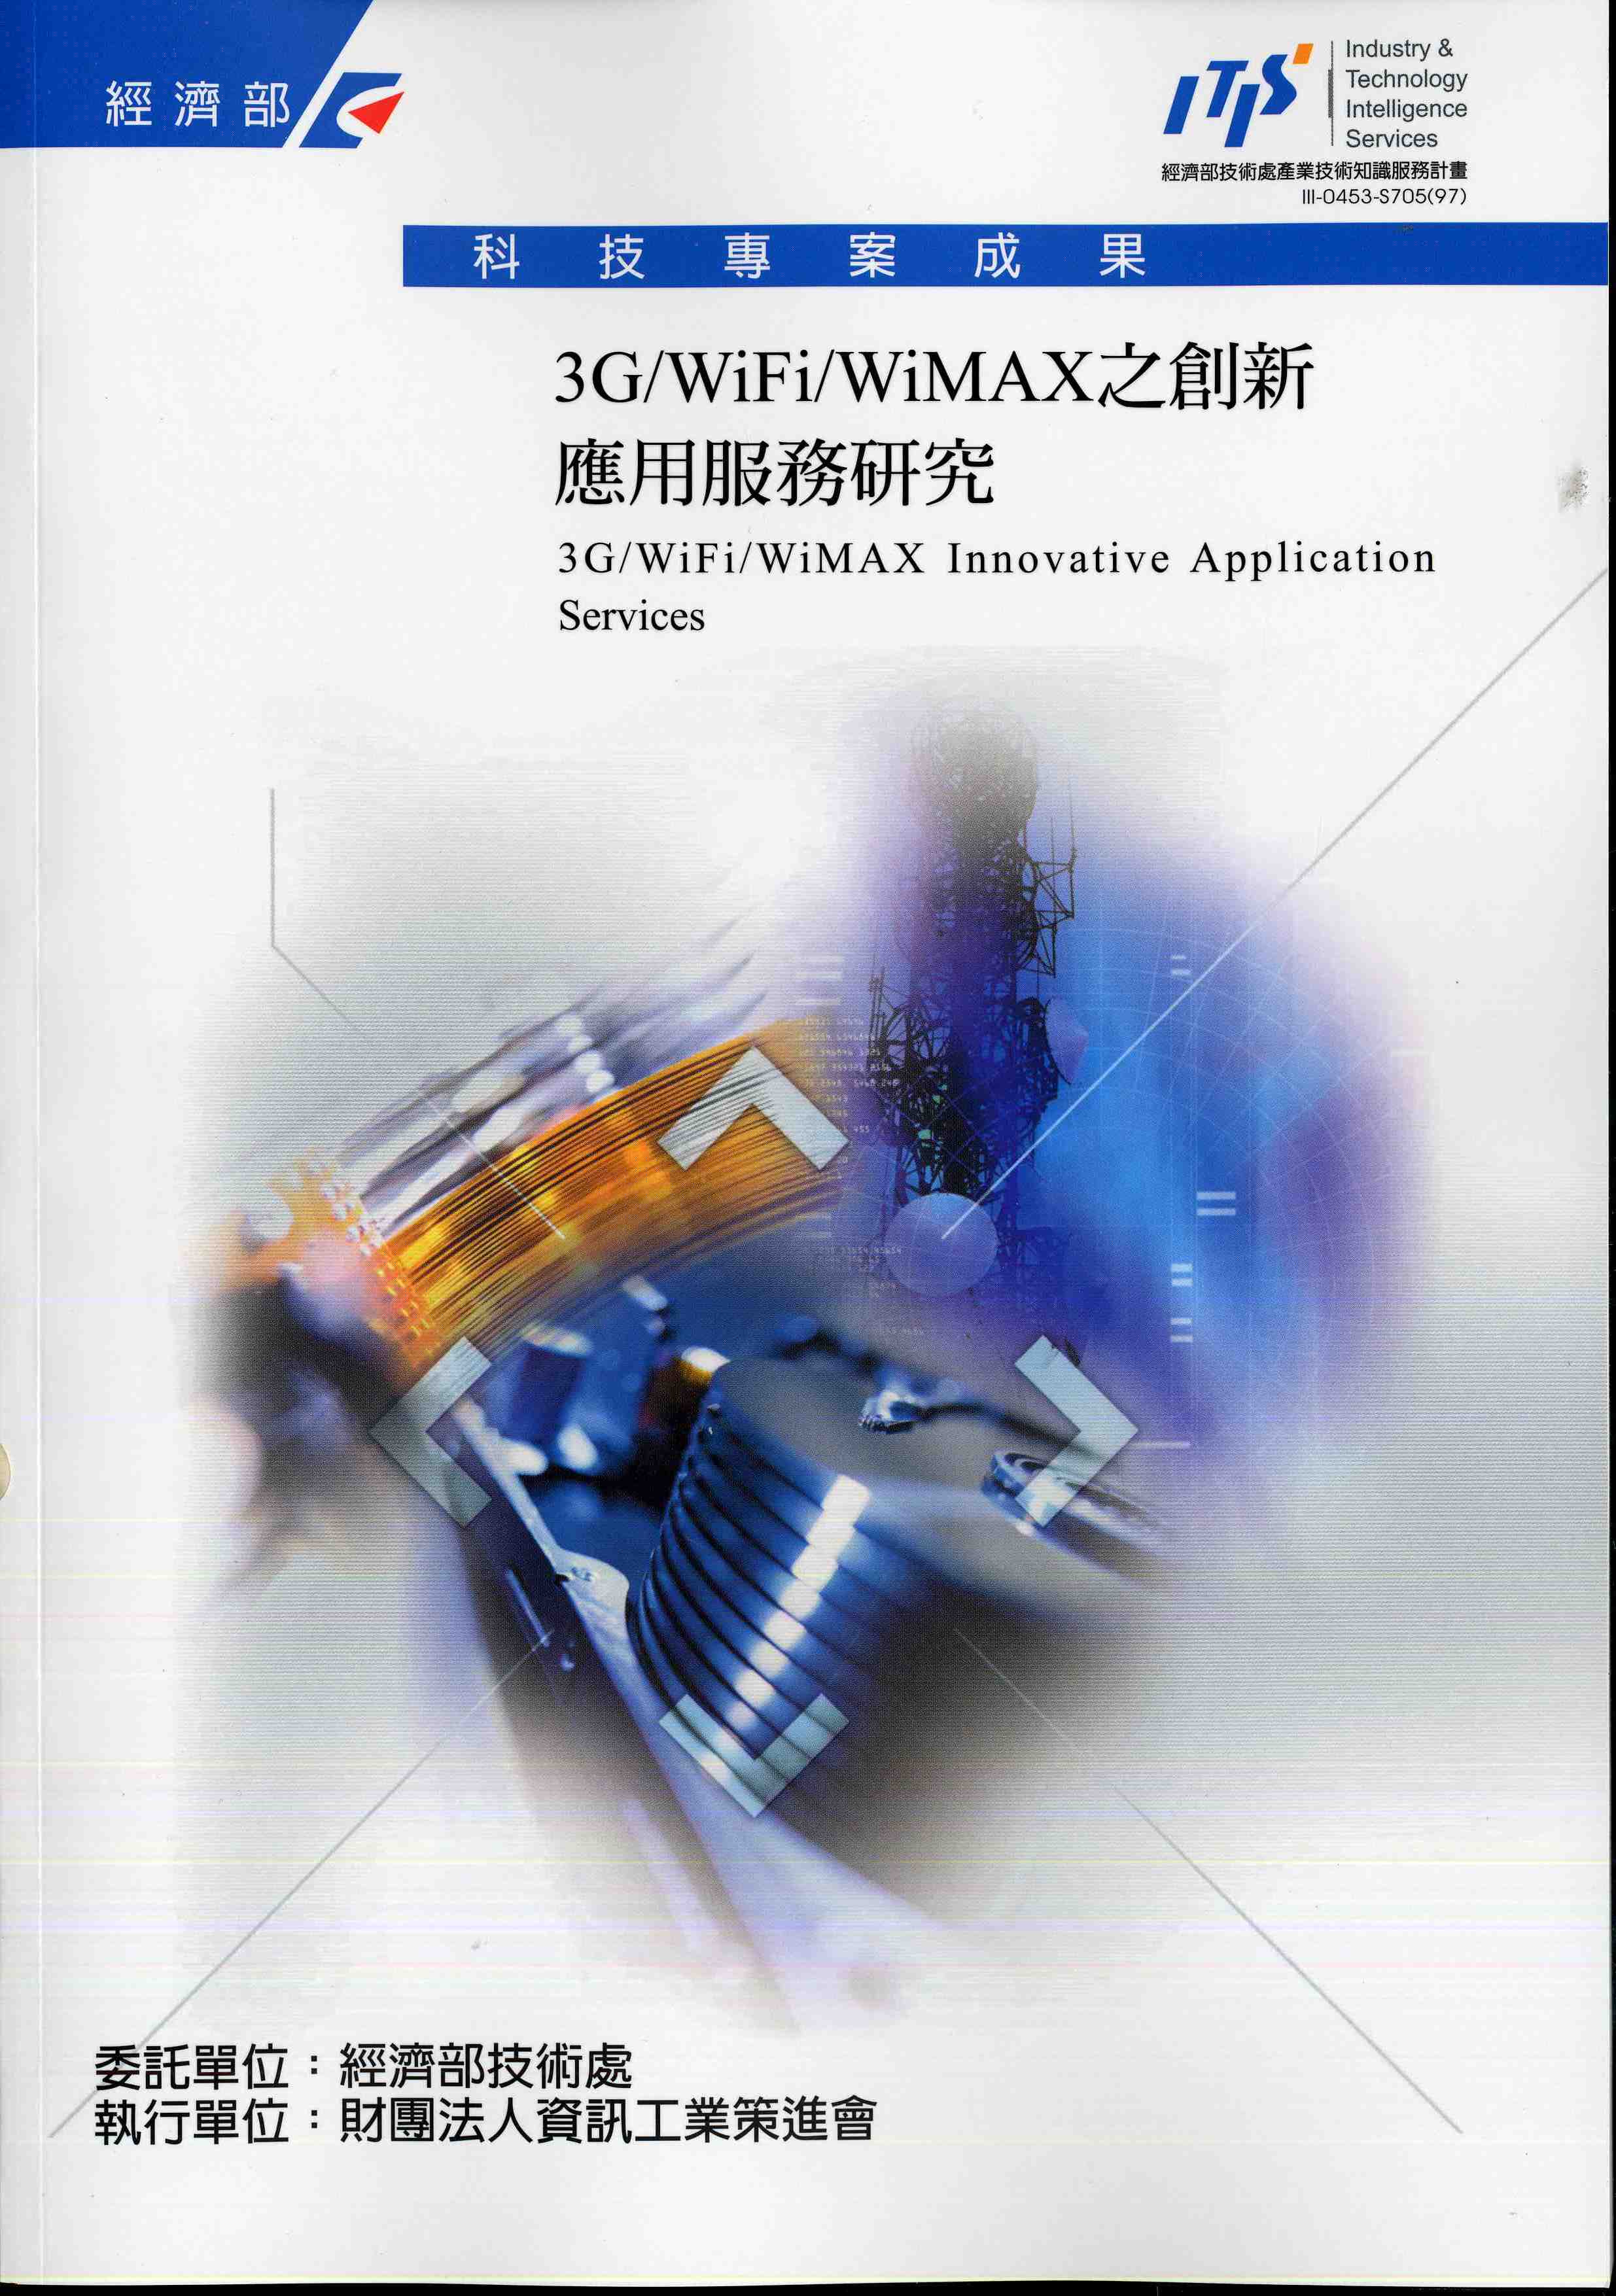 3G/WiFi/WiMAX之創新應用服務研究